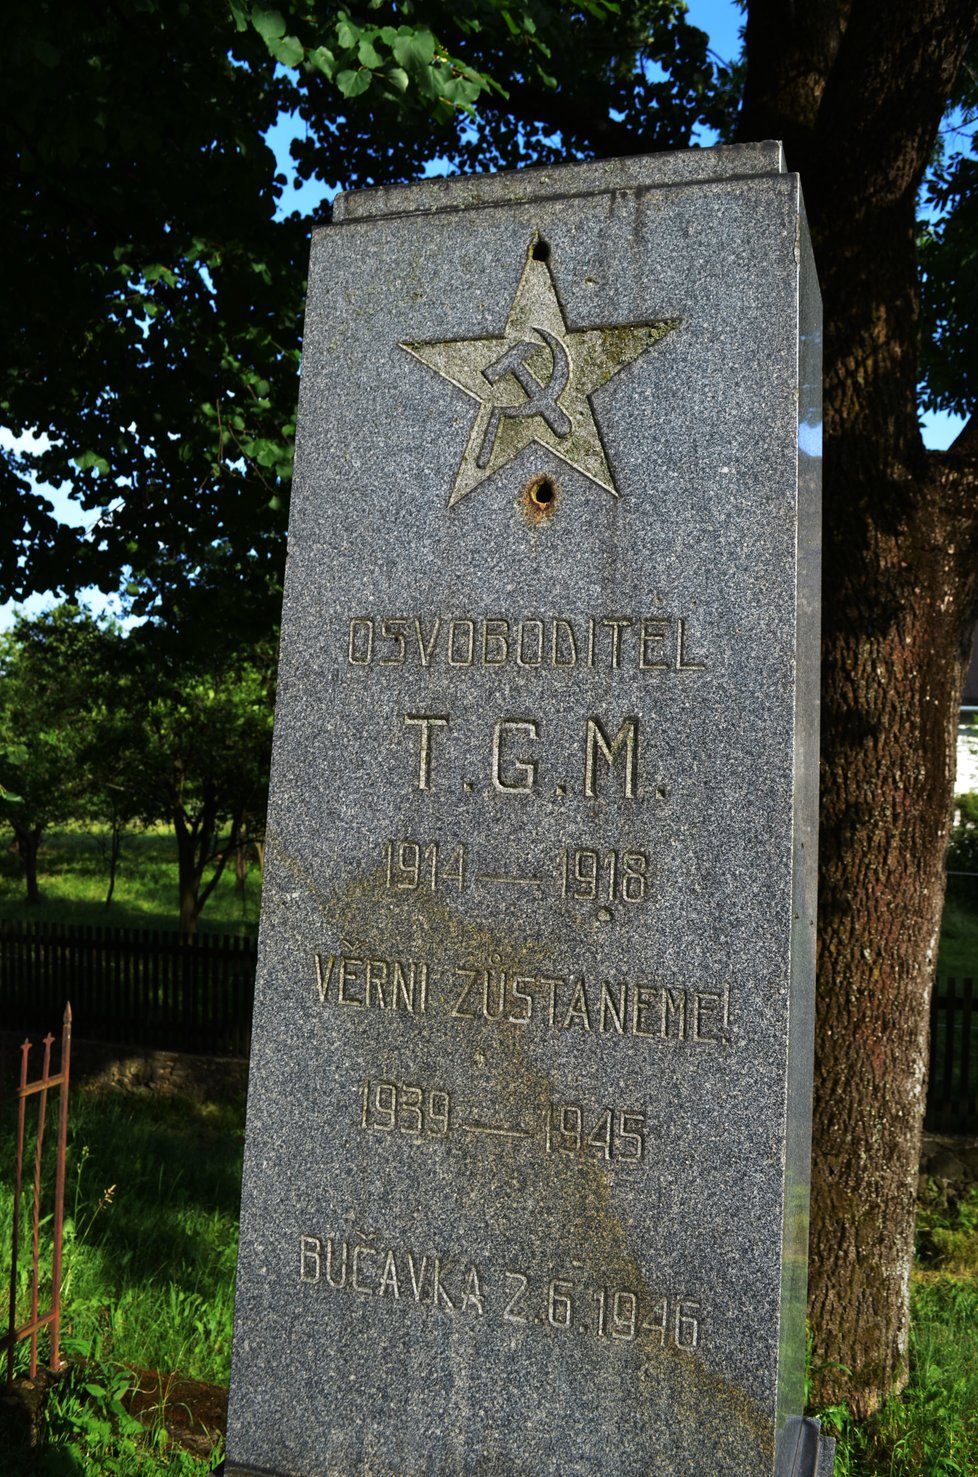 Unikátní památník stojí v Bučávce na Osoblažsku. Nad iniciálami prezidenta Masaryka je vyryt symbol komunismu – srp, kladivo a pěticípá hvězda.